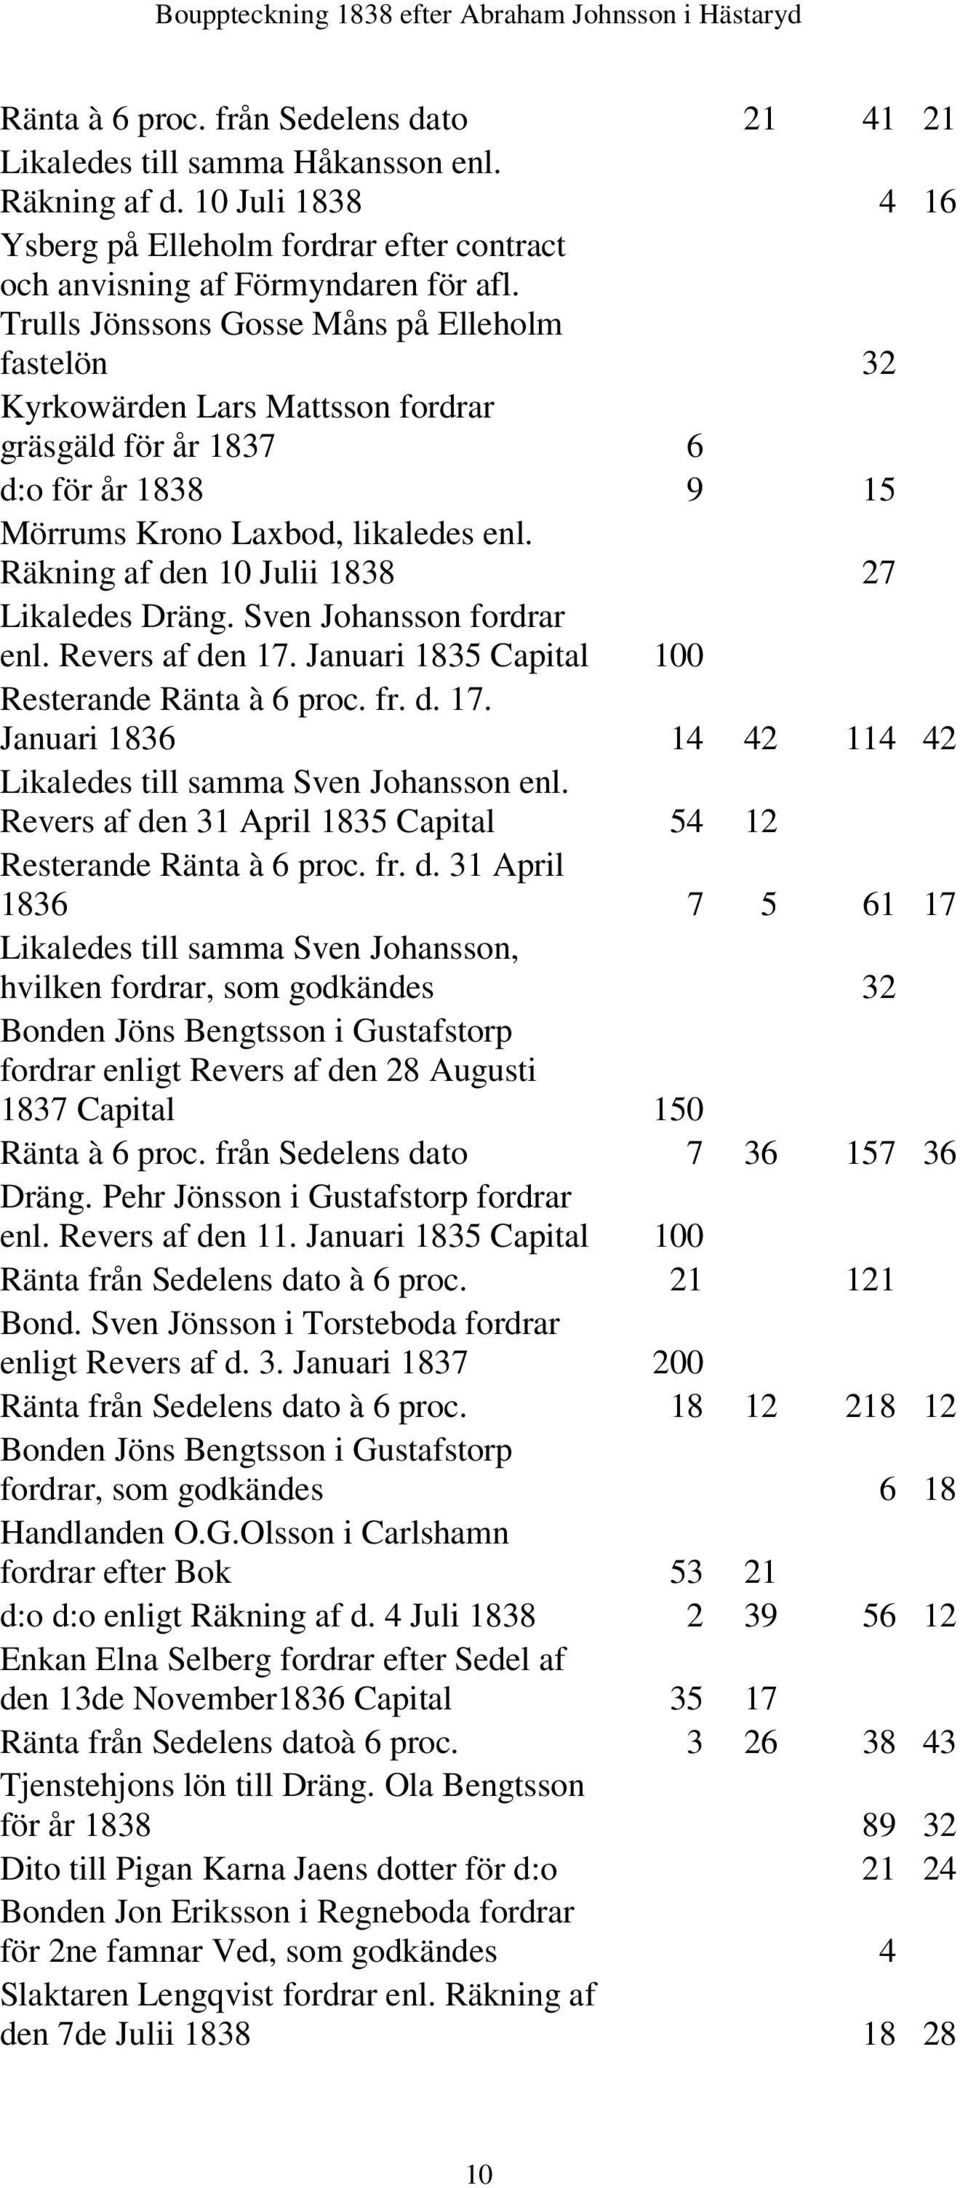 Räkning af den 10 Julii 1838 27 Likaledes Dräng. Sven Johansson fordrar enl. Revers af den 17. Januari 1835 Capital 100 Resterande Ränta à 6 proc. fr. d. 17. Januari 1836 14 42 114 42 Likaledes till samma Sven Johansson enl.